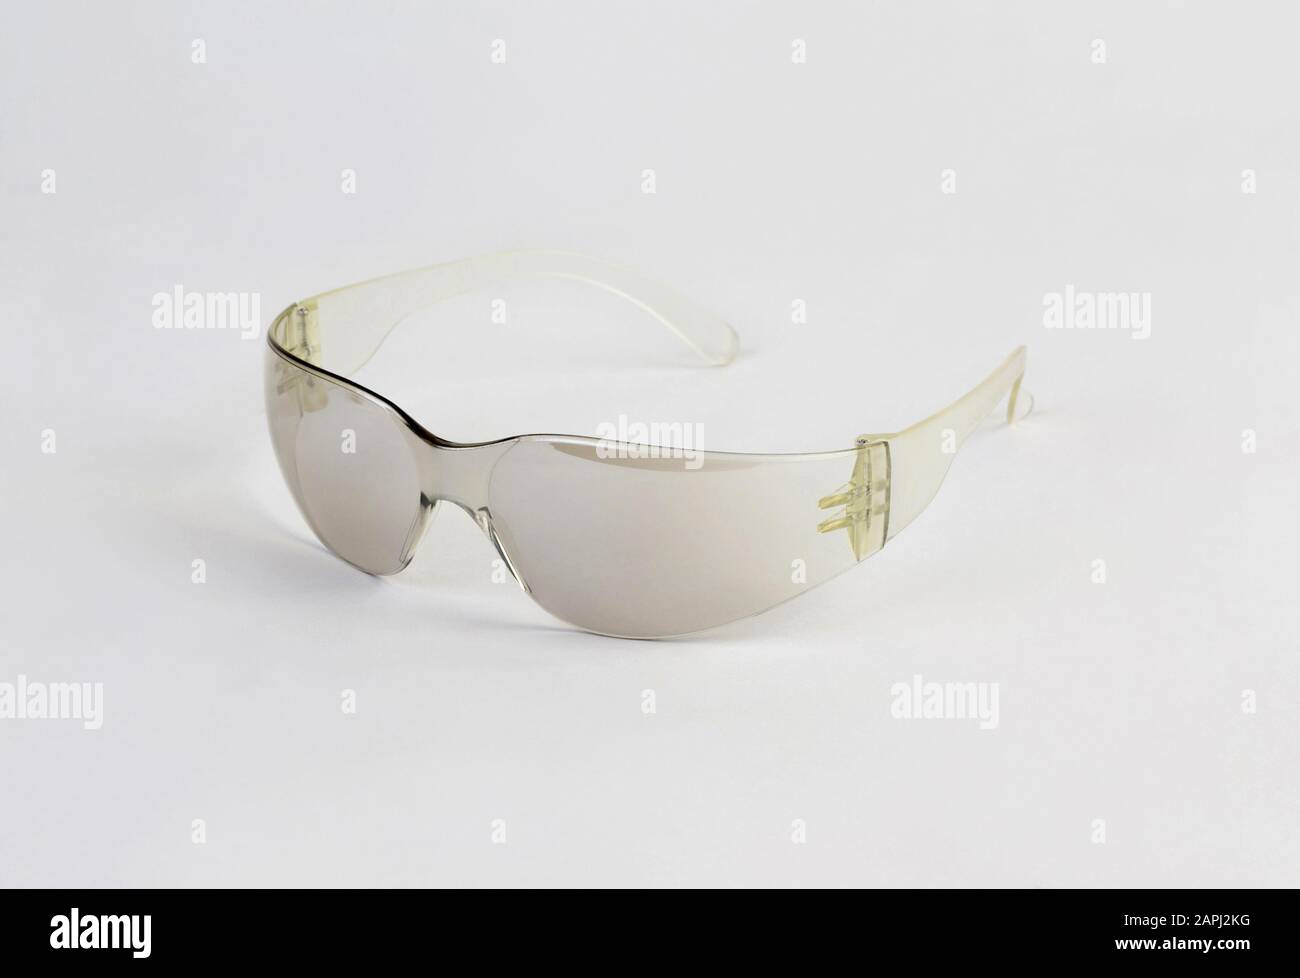 Protective eyewear, safety glasses isolated on white background Stock Photo